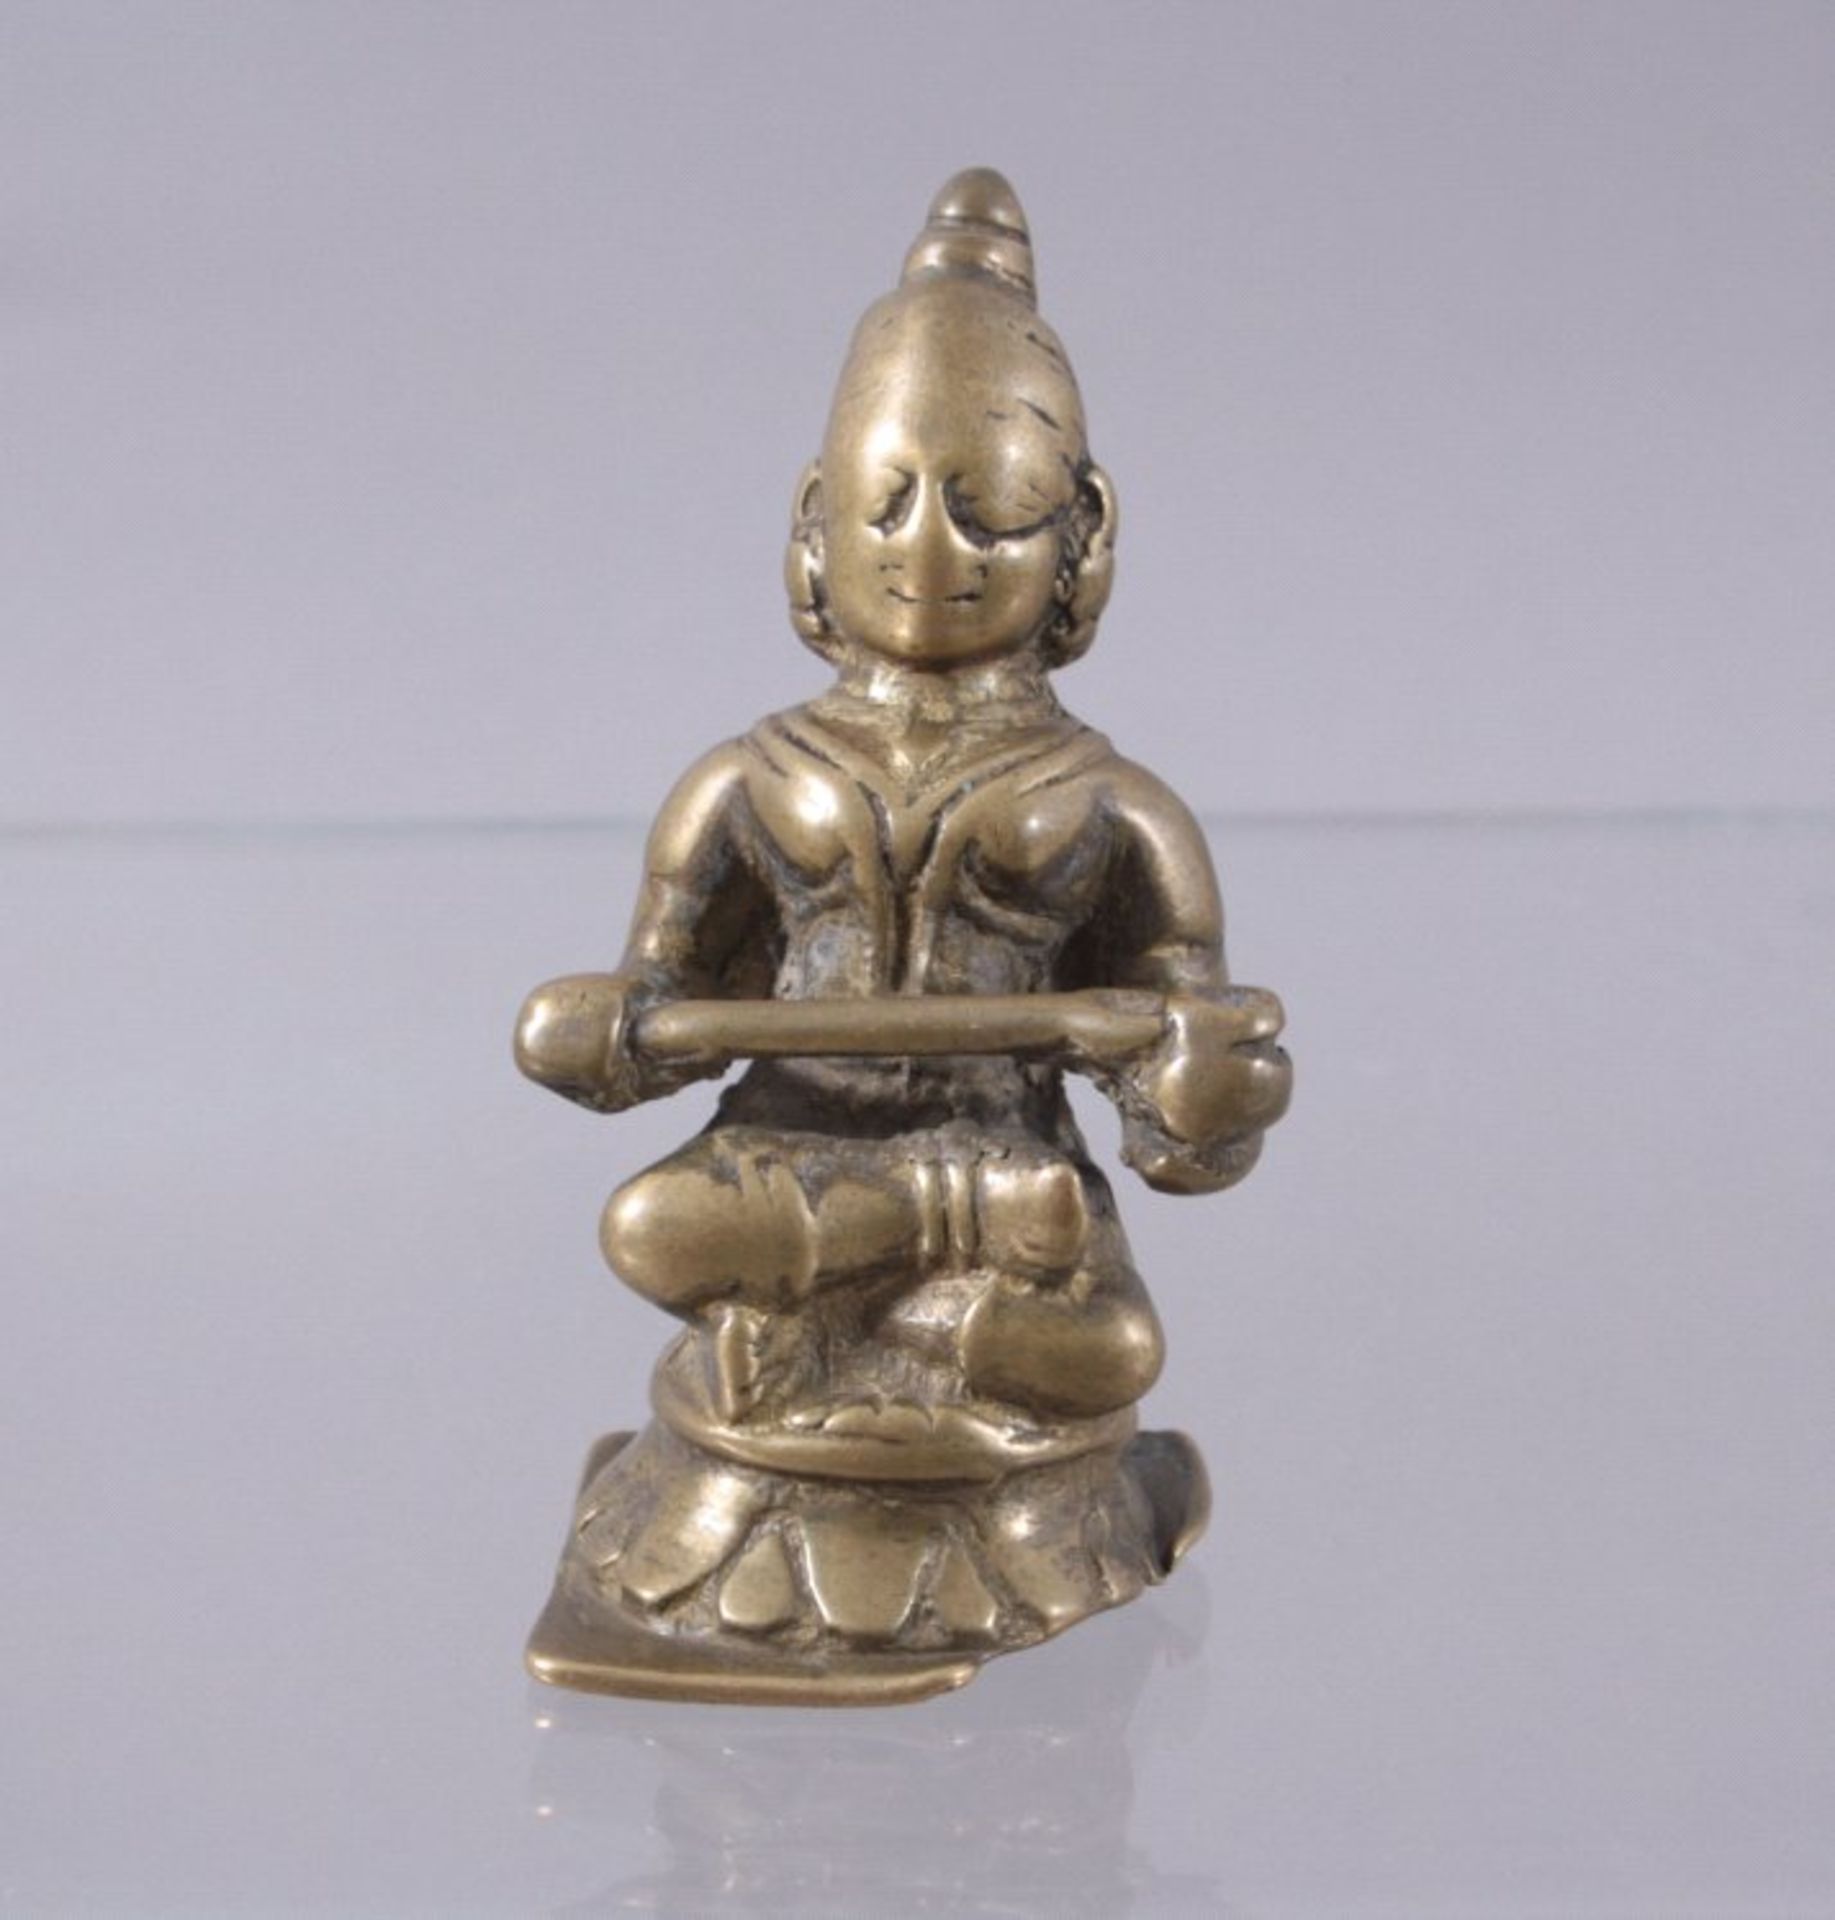 Bronzeskulptur, Indien 14./15. Jh.auf rundem Lotusthron sitzende Gottheit mit Zepter in derHand